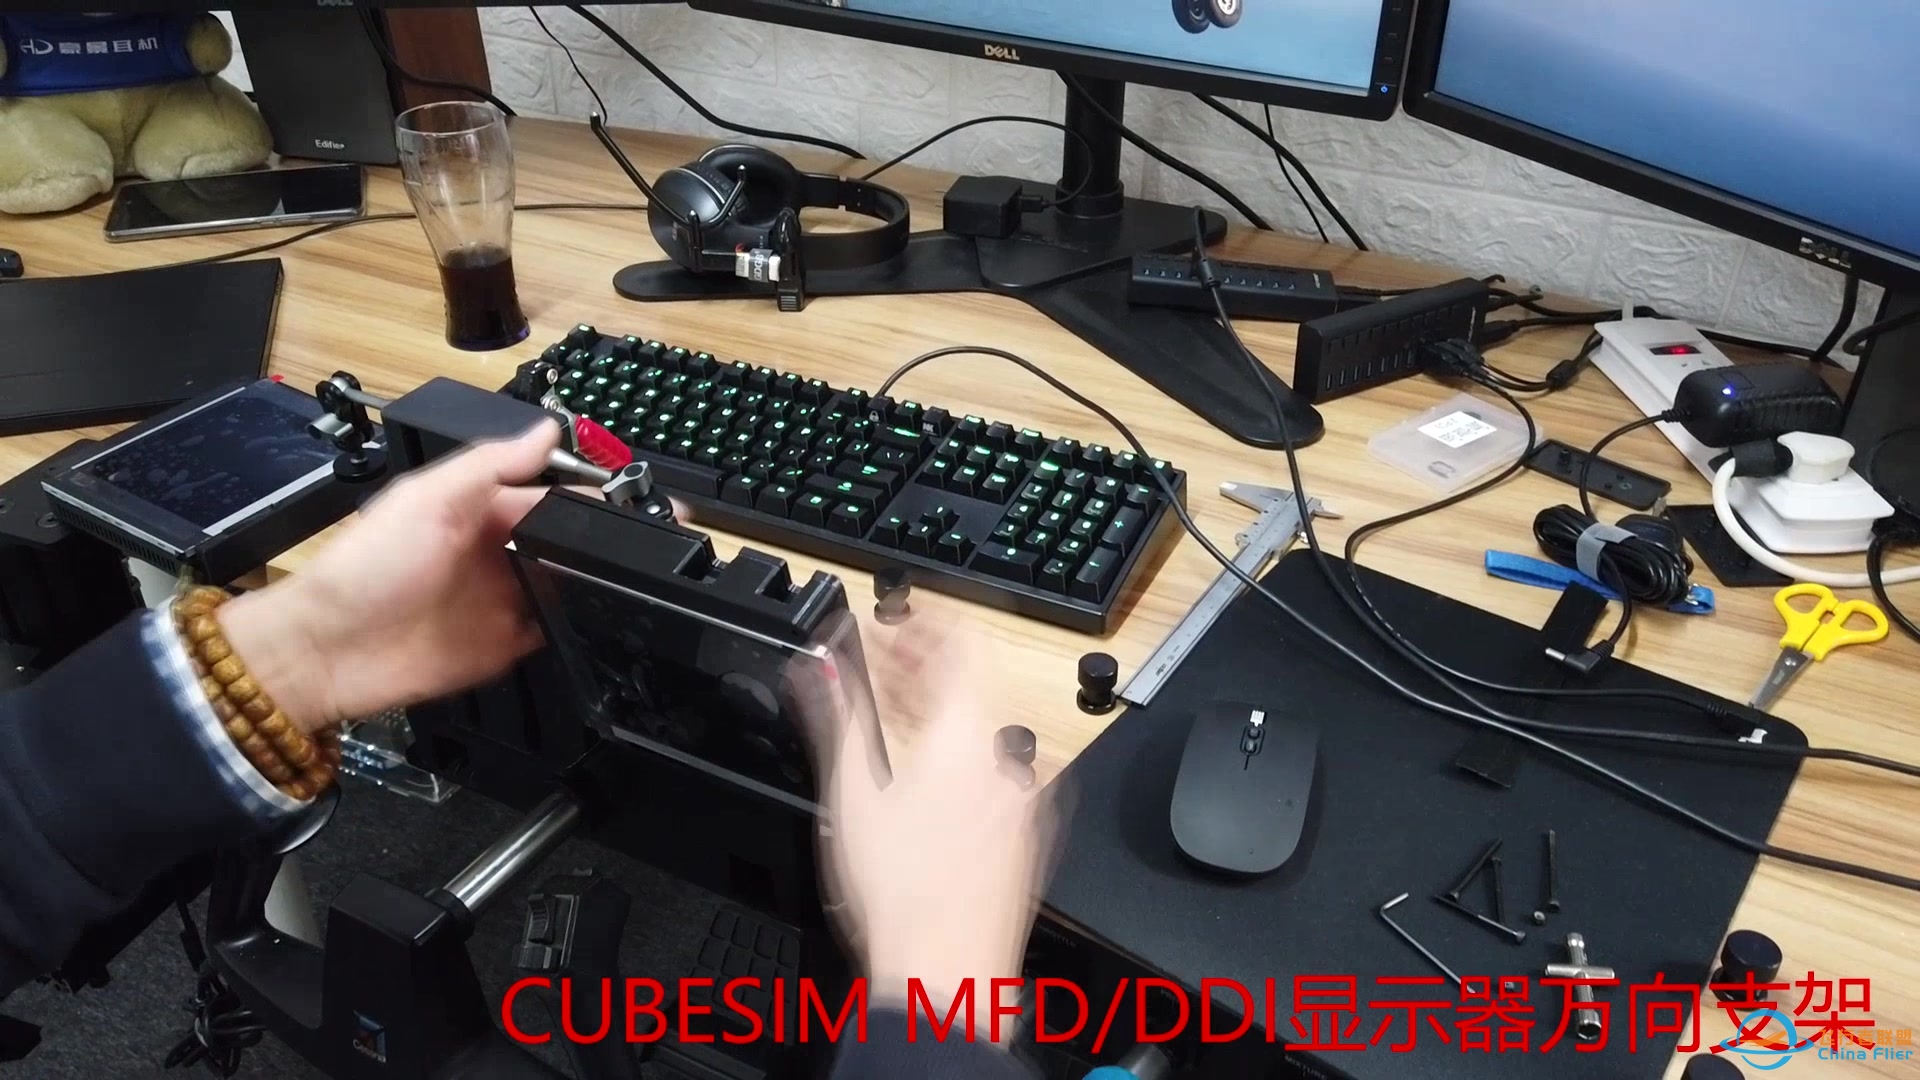 CUBESIM 飞行摇杆&amp;amp;MFD/DDI显示器 桌面支架-9434 